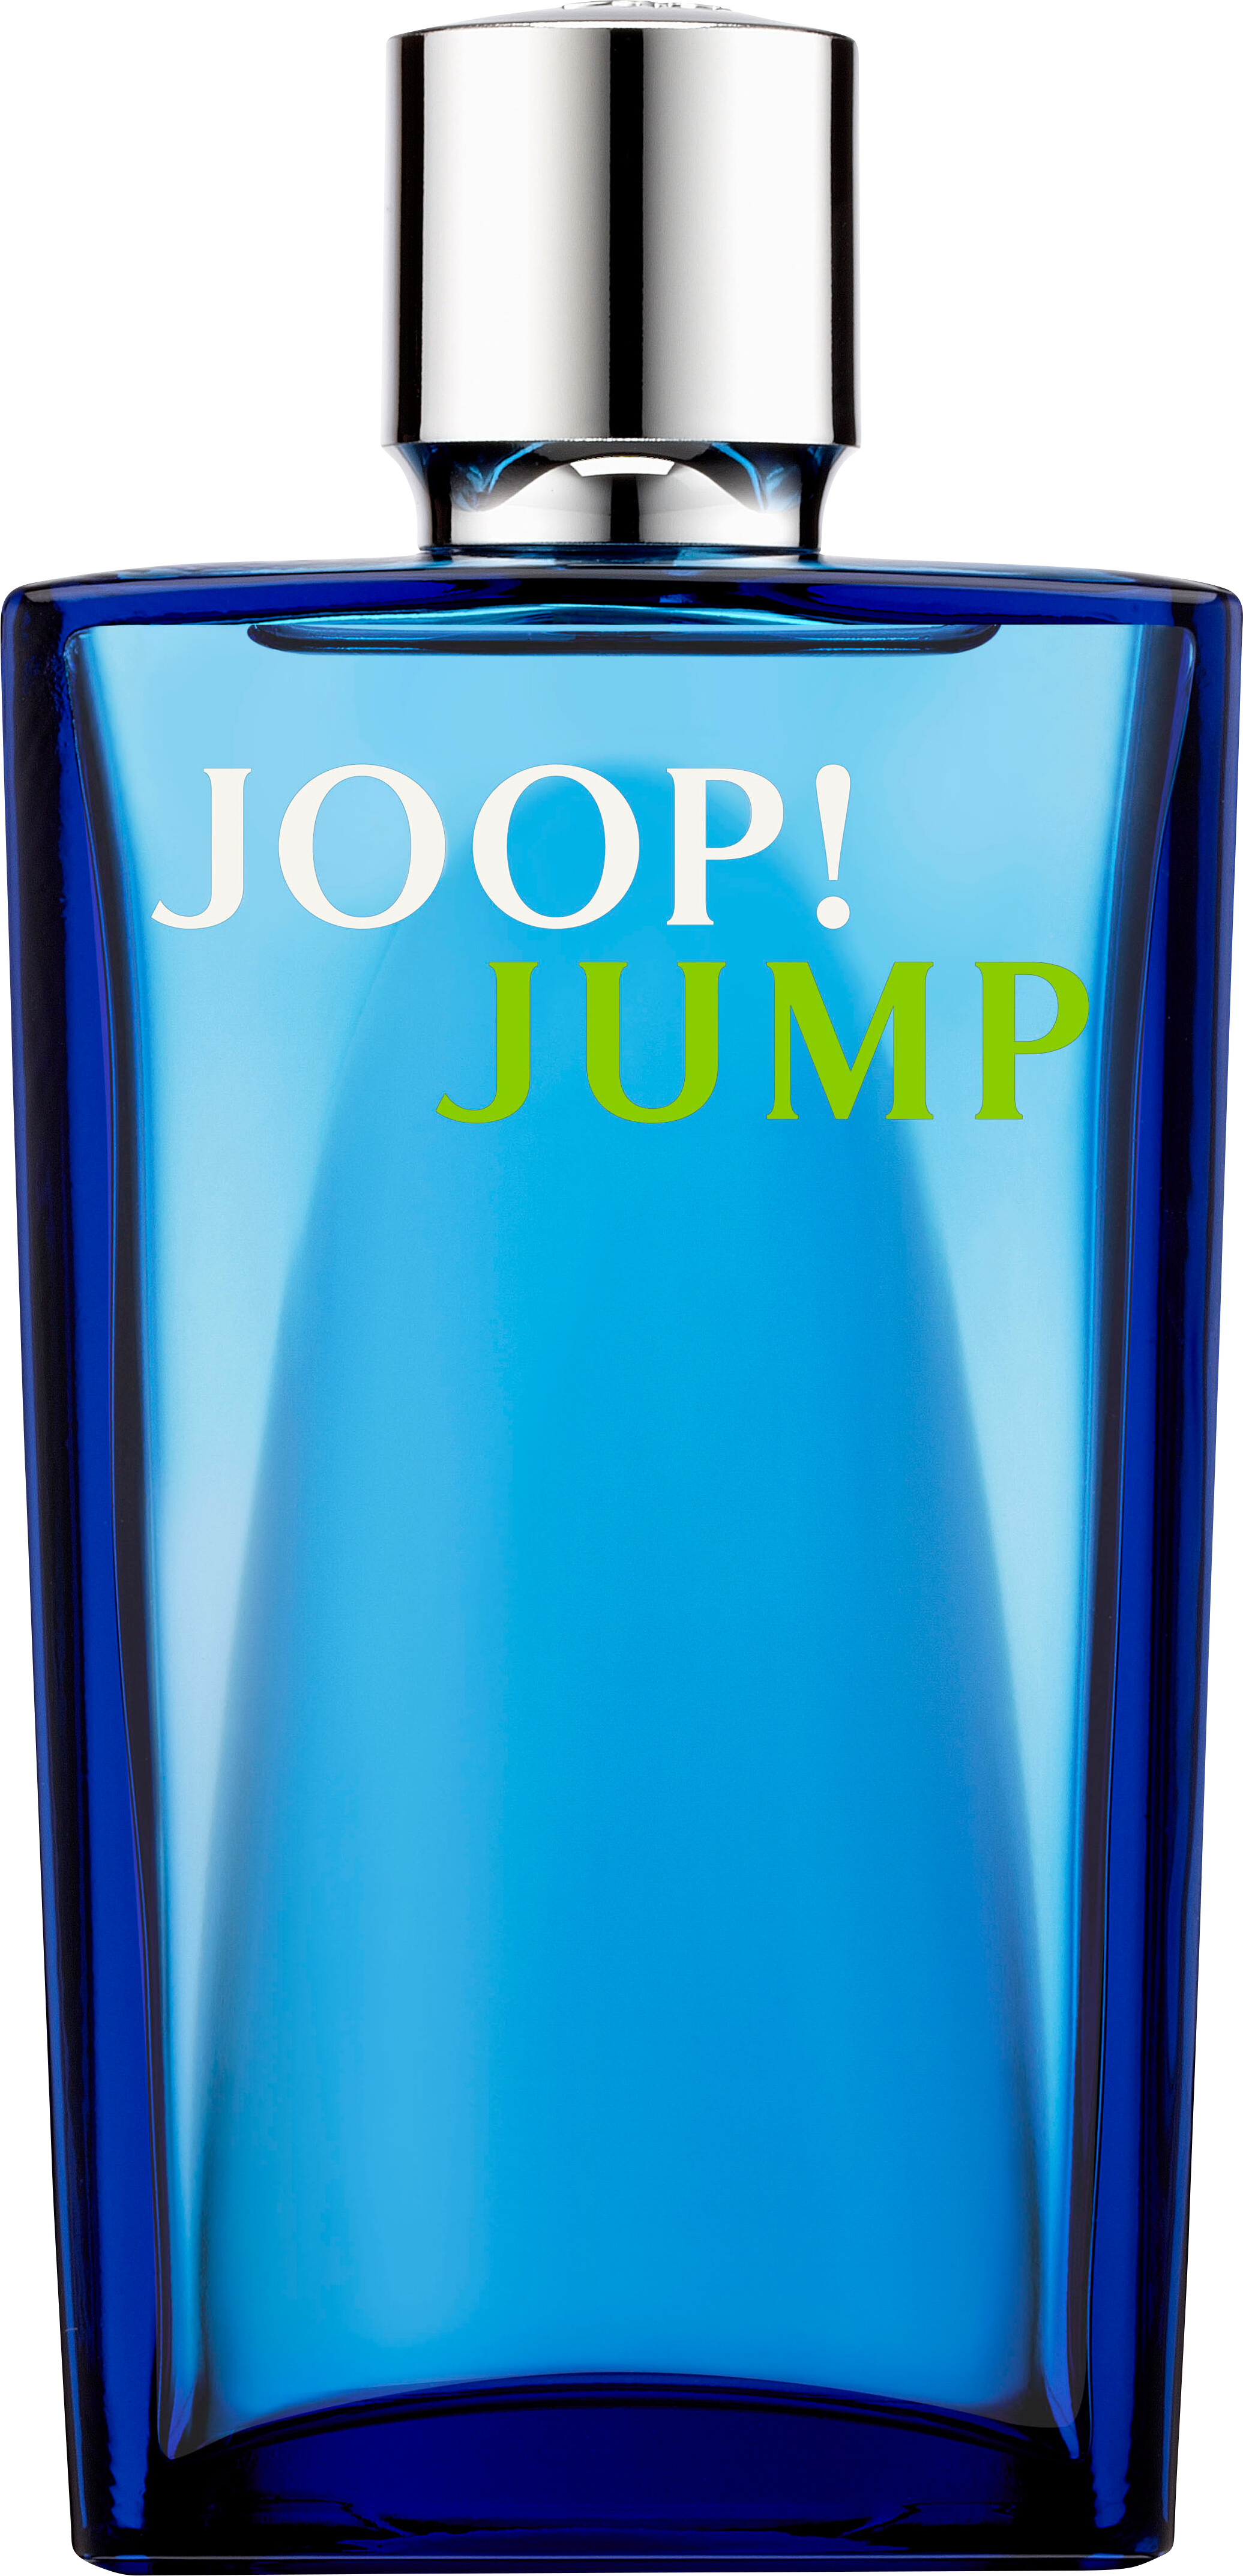 Joop Jump Eau de Toilette Spray 100ml